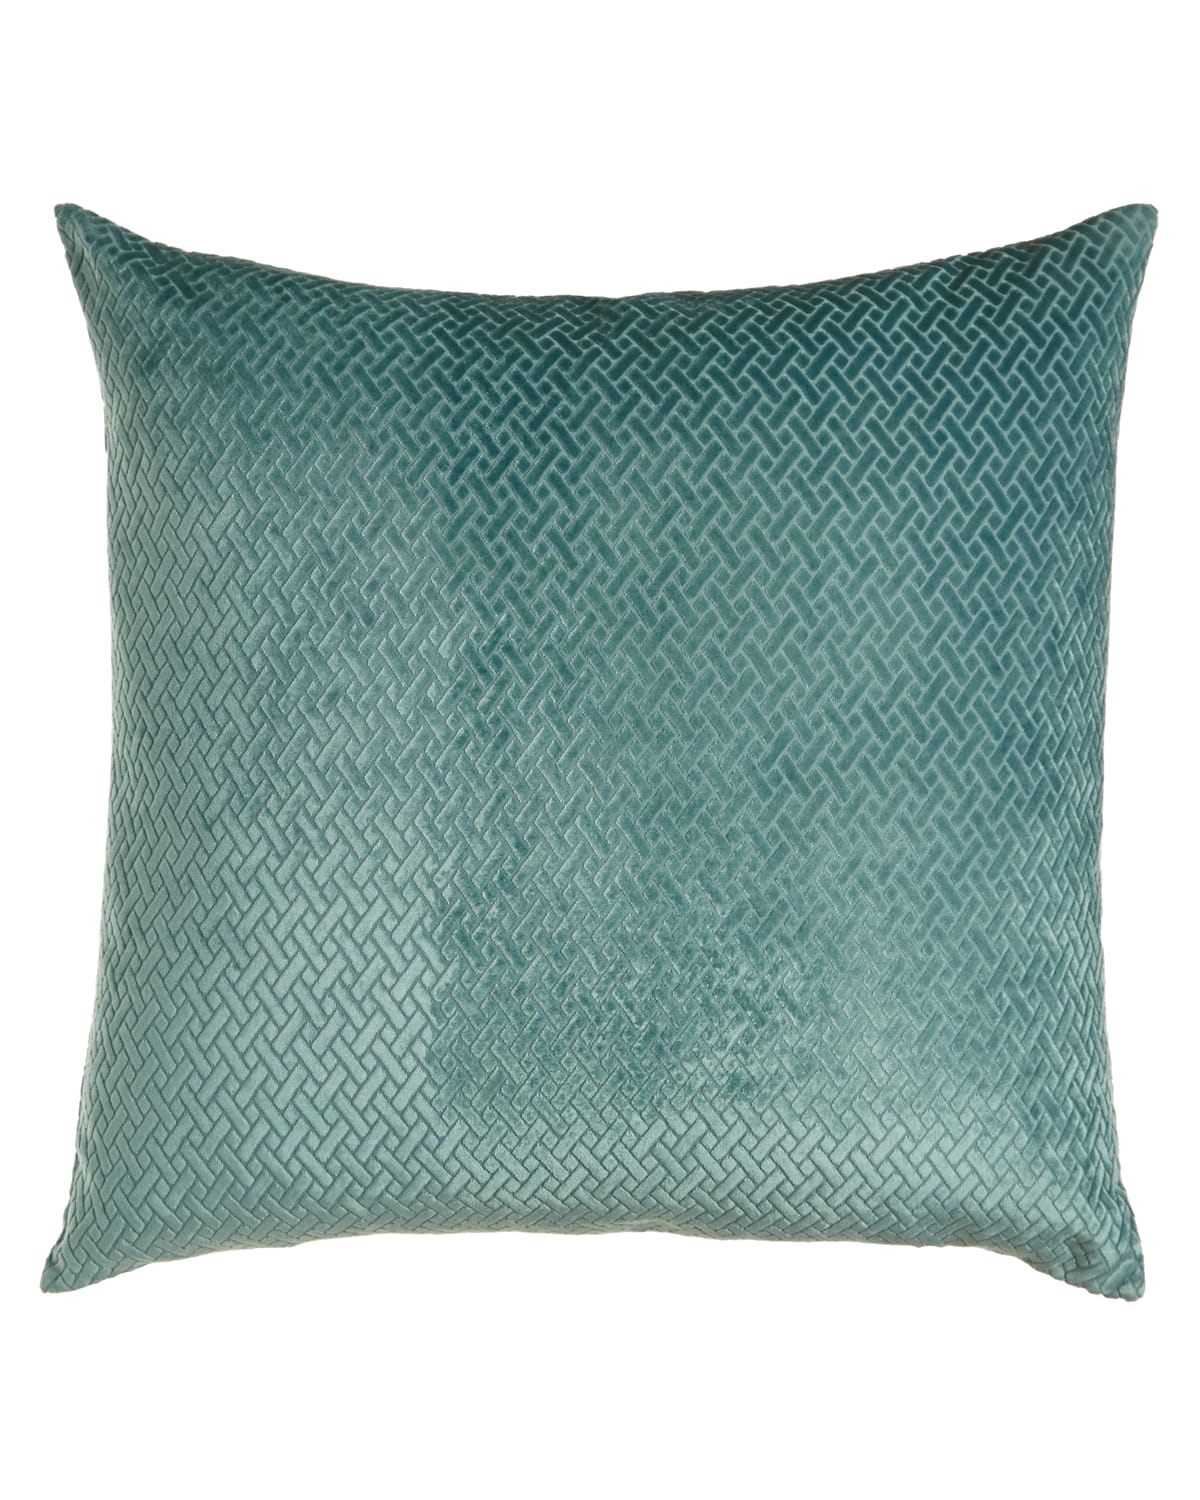 D.v. Kap Home Azure Maze Pillow In Teal